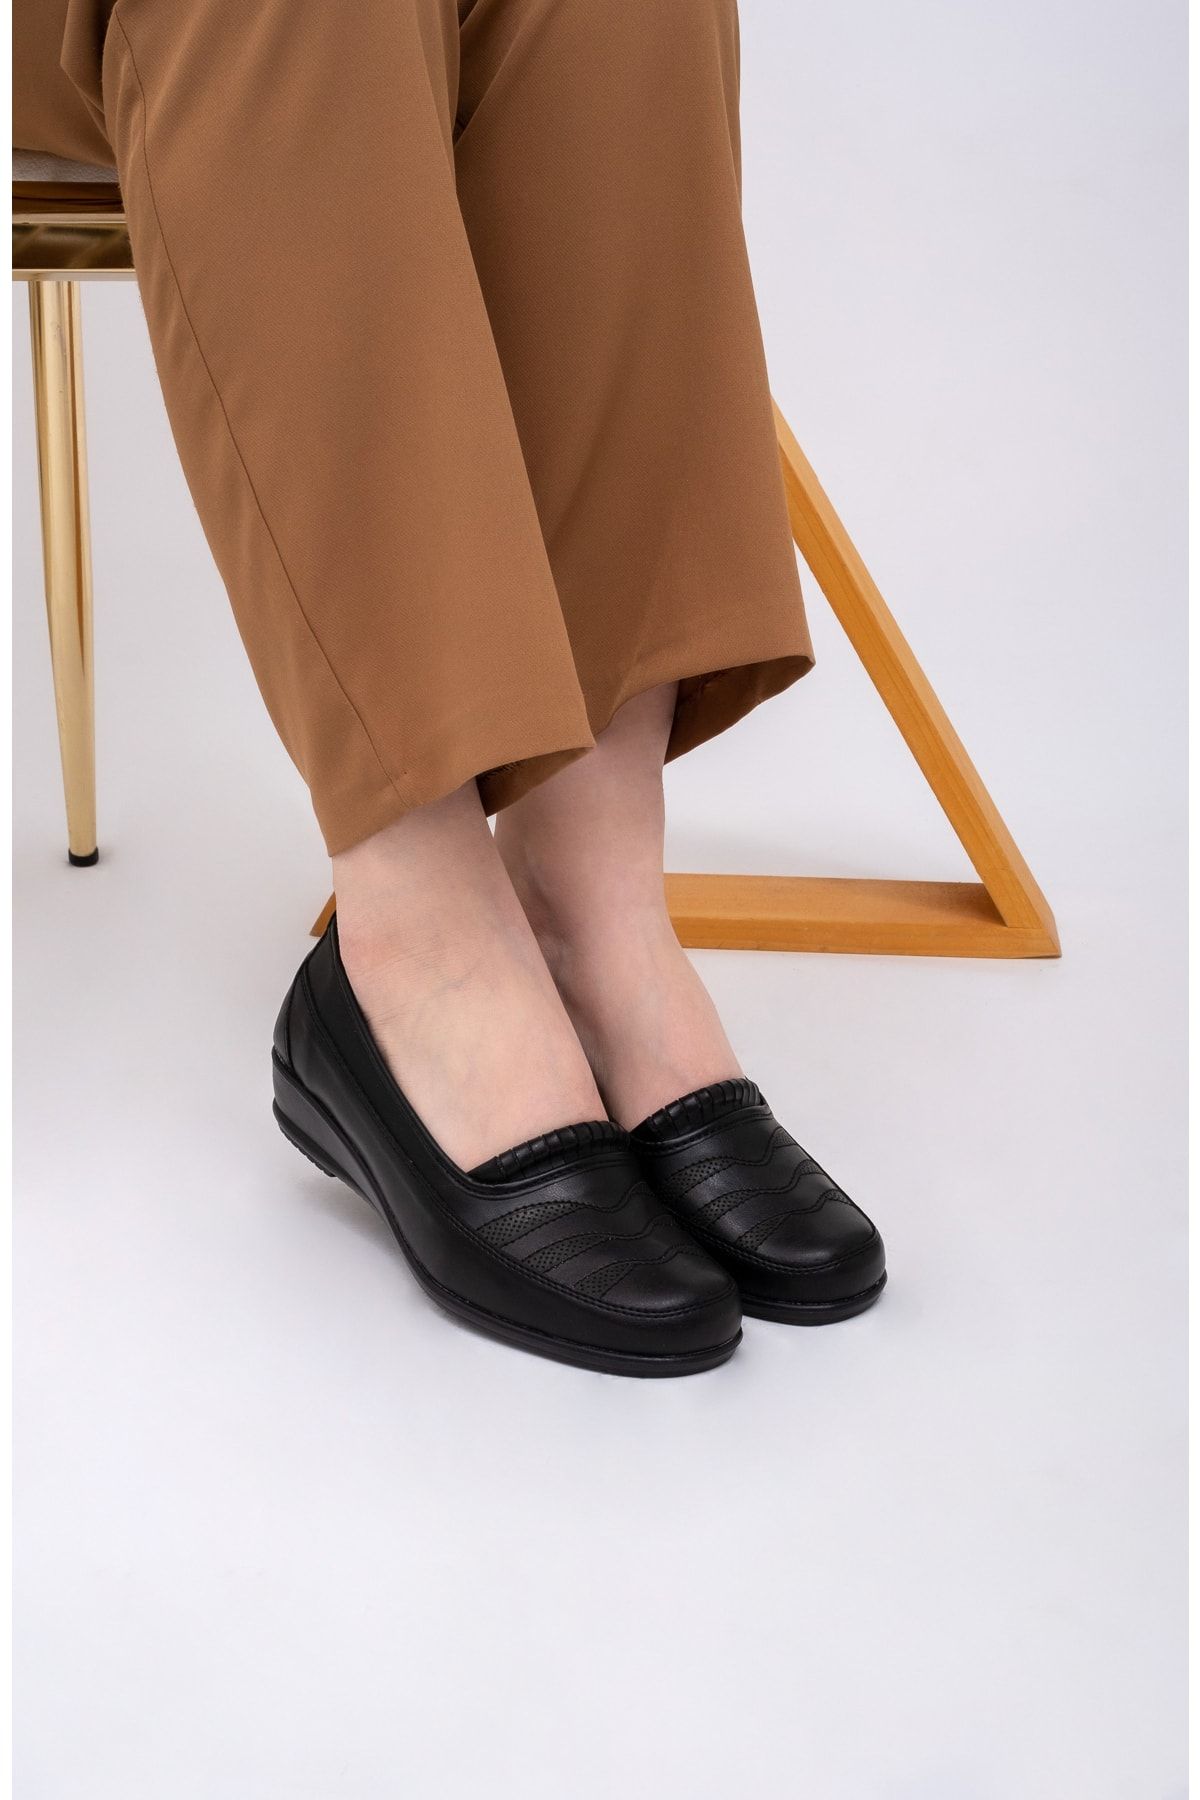 THE FRİDA SHOES Siyah Içi Hakiki Deri Günlük Ortopedik Taban Lazerli Dolgu Topuk Kadın Ayakkabı 427siyah